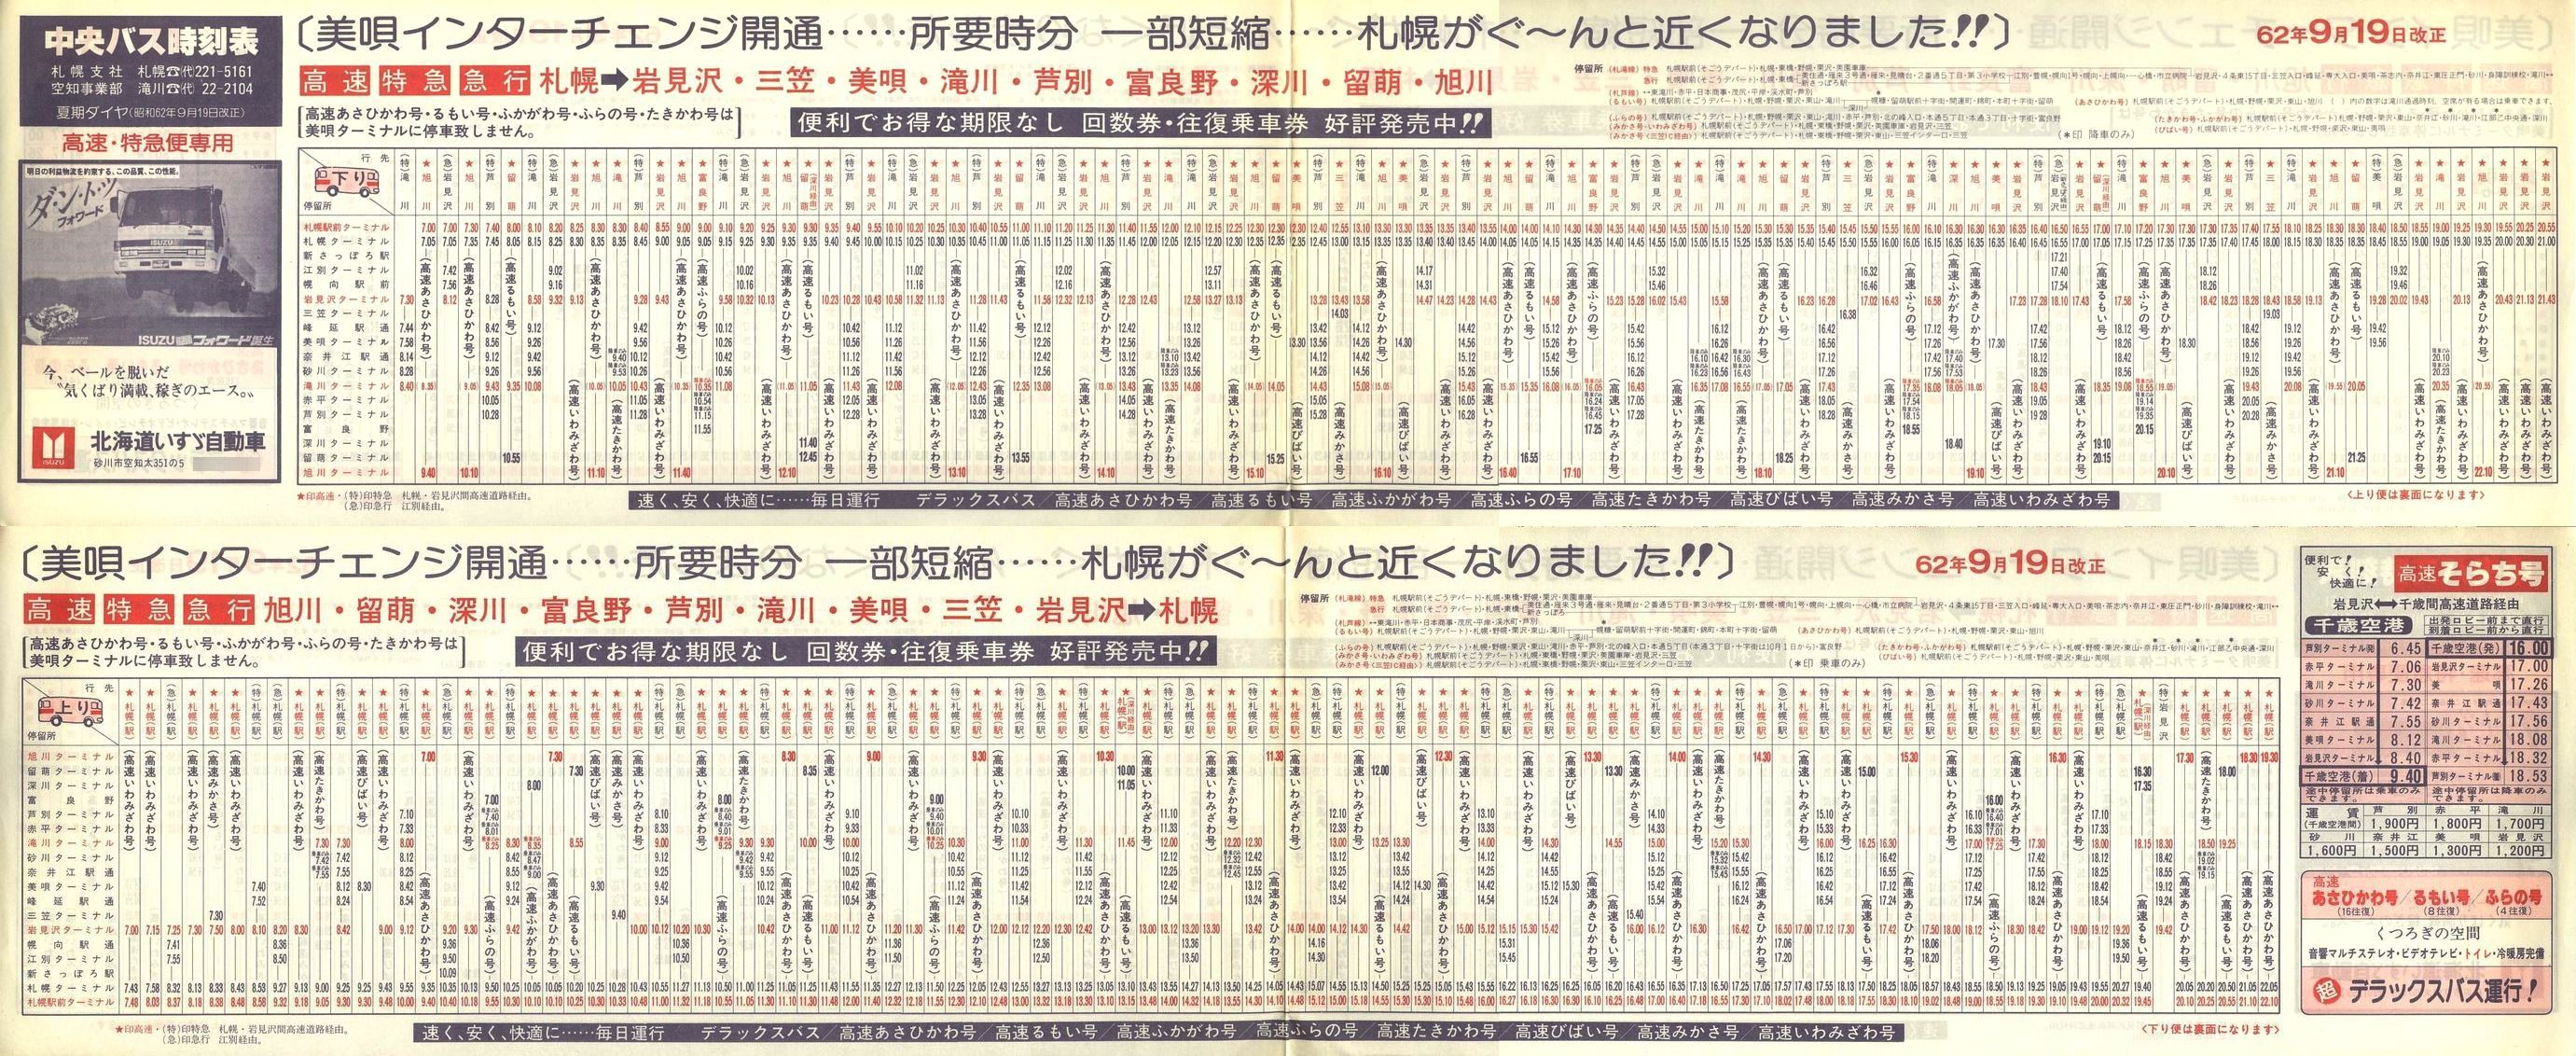 1987-09-19改正_北海道中央バス(空知)_高速特急便時刻表